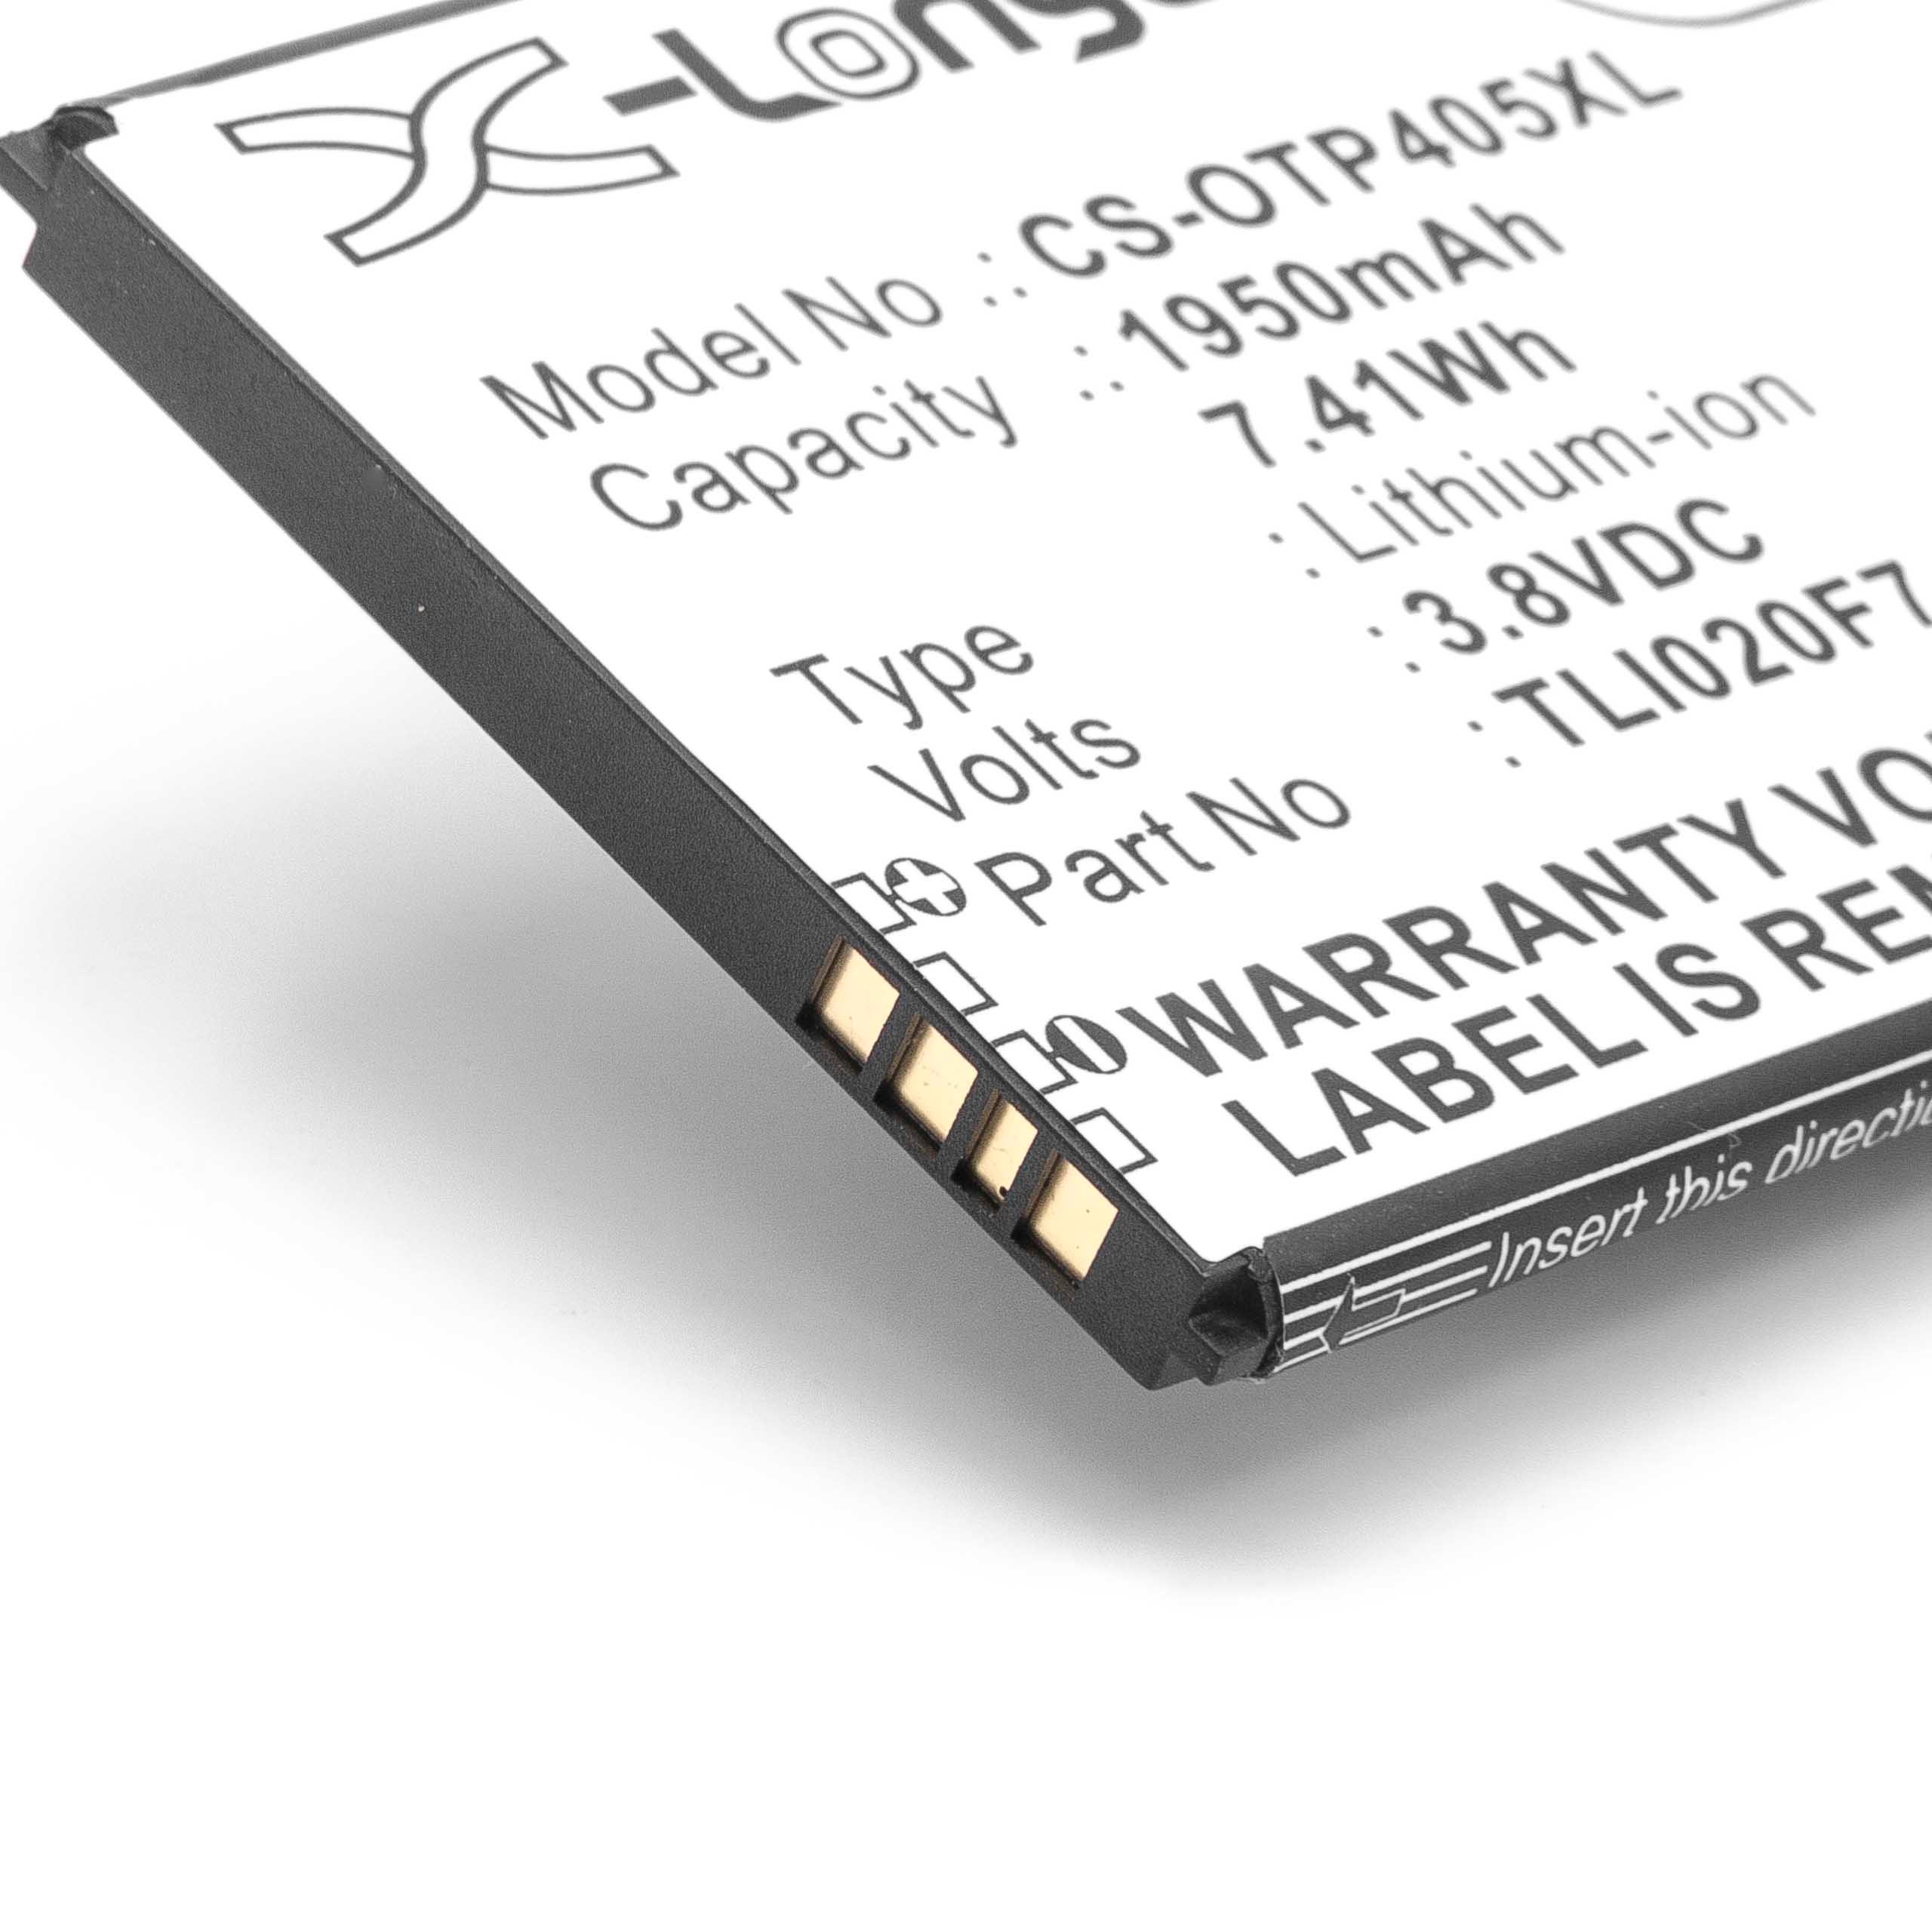 Batteria sostituisce Alcatel TLI020F7 per cellulare Alcatel - 1950mAh 3,8V Li-Ion